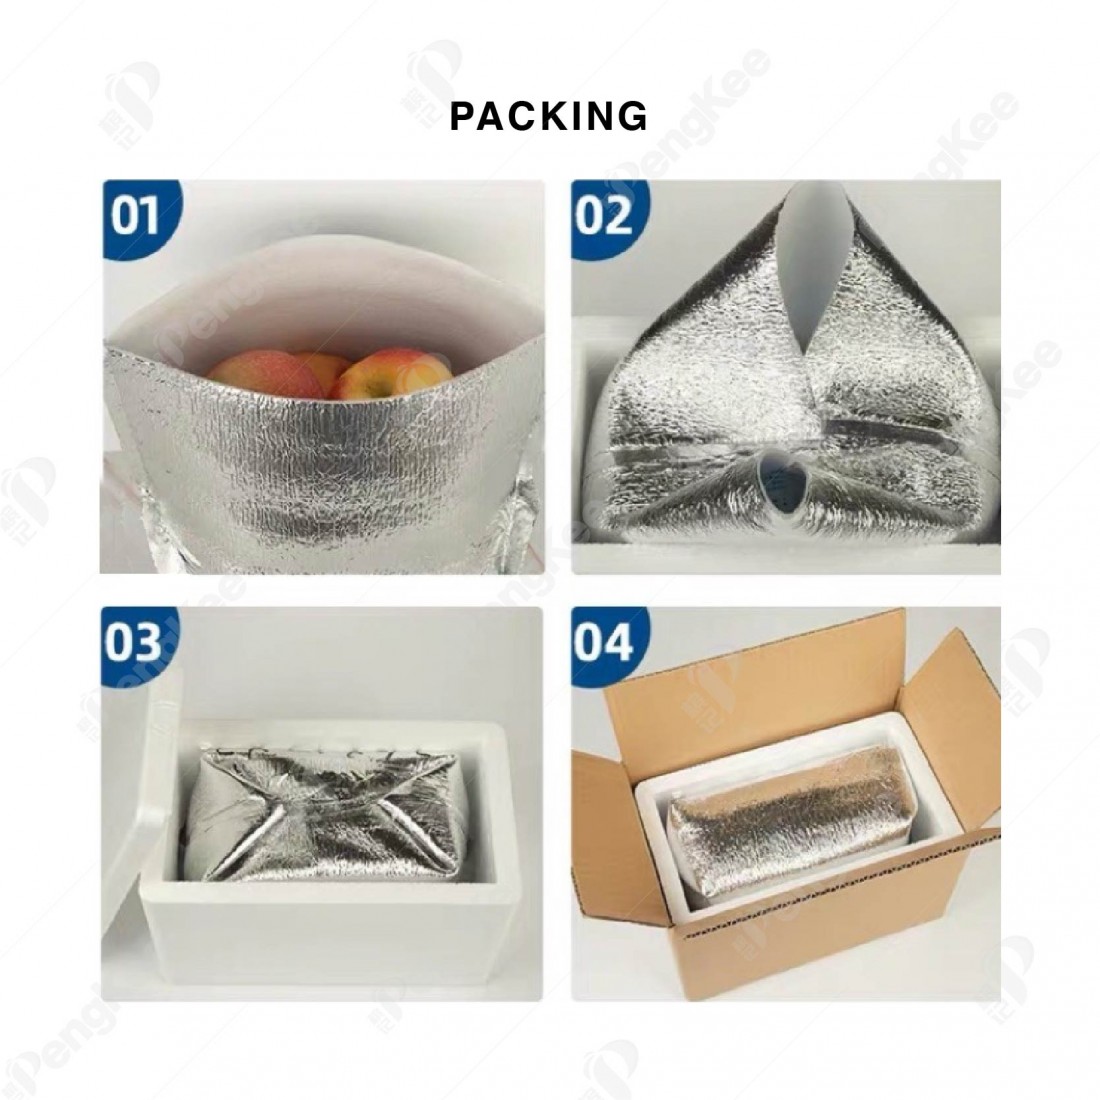 ALUMINUM FOIL PEARL COTTON INSULATION BAG (L33 * W33 * H49CM +3MM) 铝箱珍珠保温袋 (20'S)